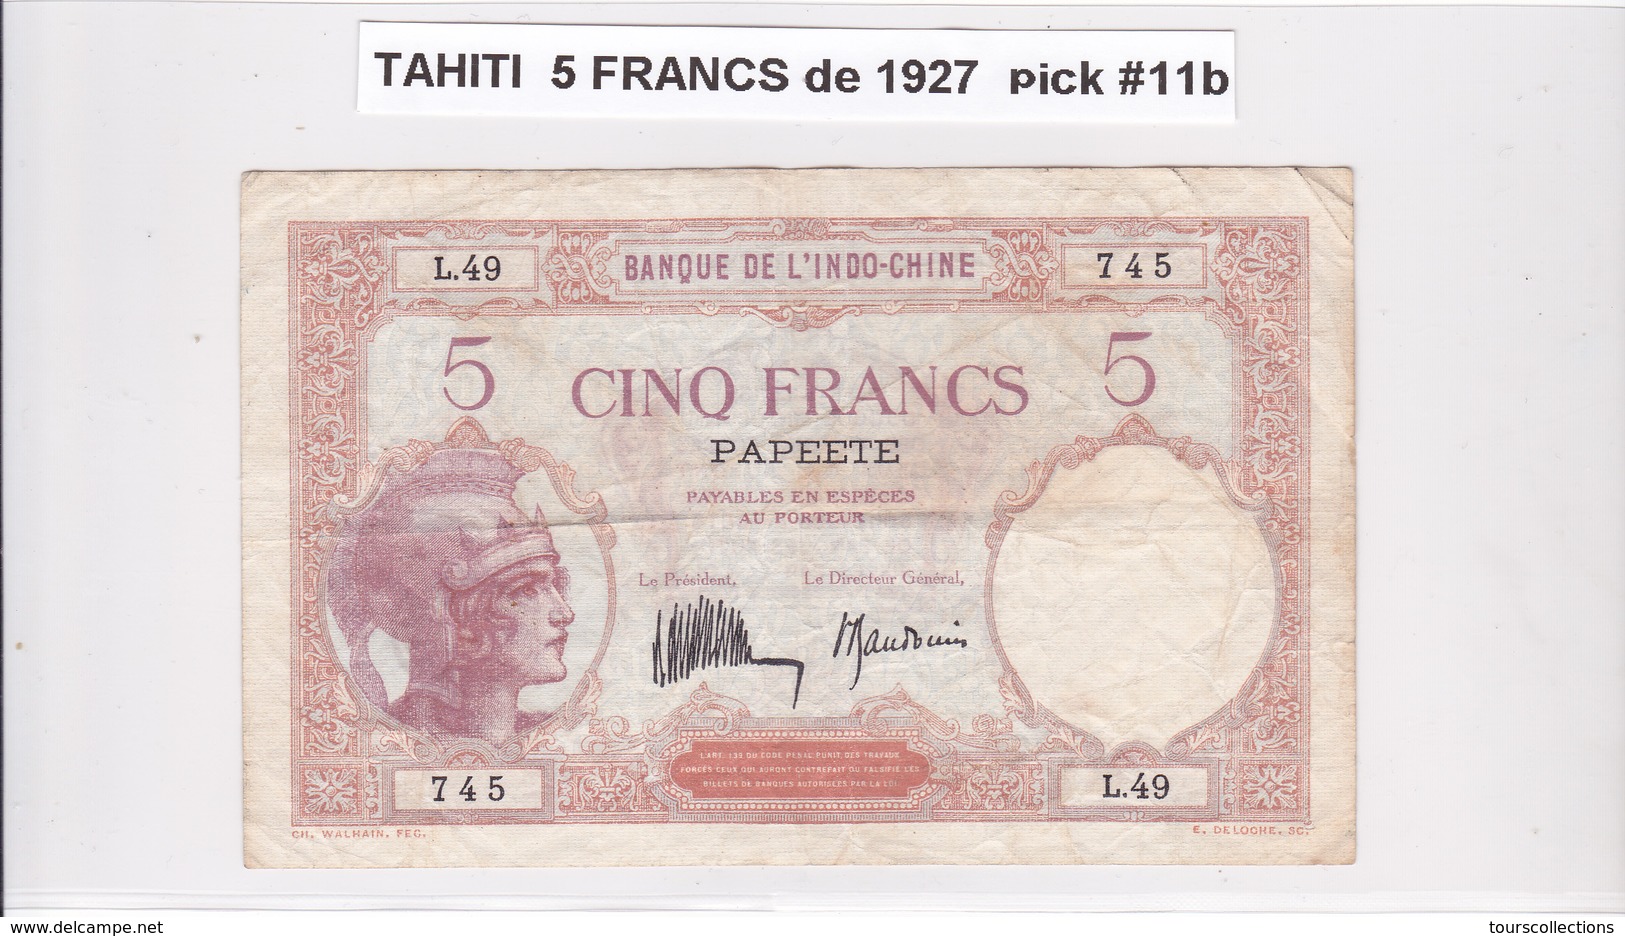 BILLET 5 FRANCS De 1927 De TAHITI Papeete L.49 - Banque De L'indochine Surcharge Polynésie Francaise @ Pick 11b - Papeete (French Polynesia 1914-1985)